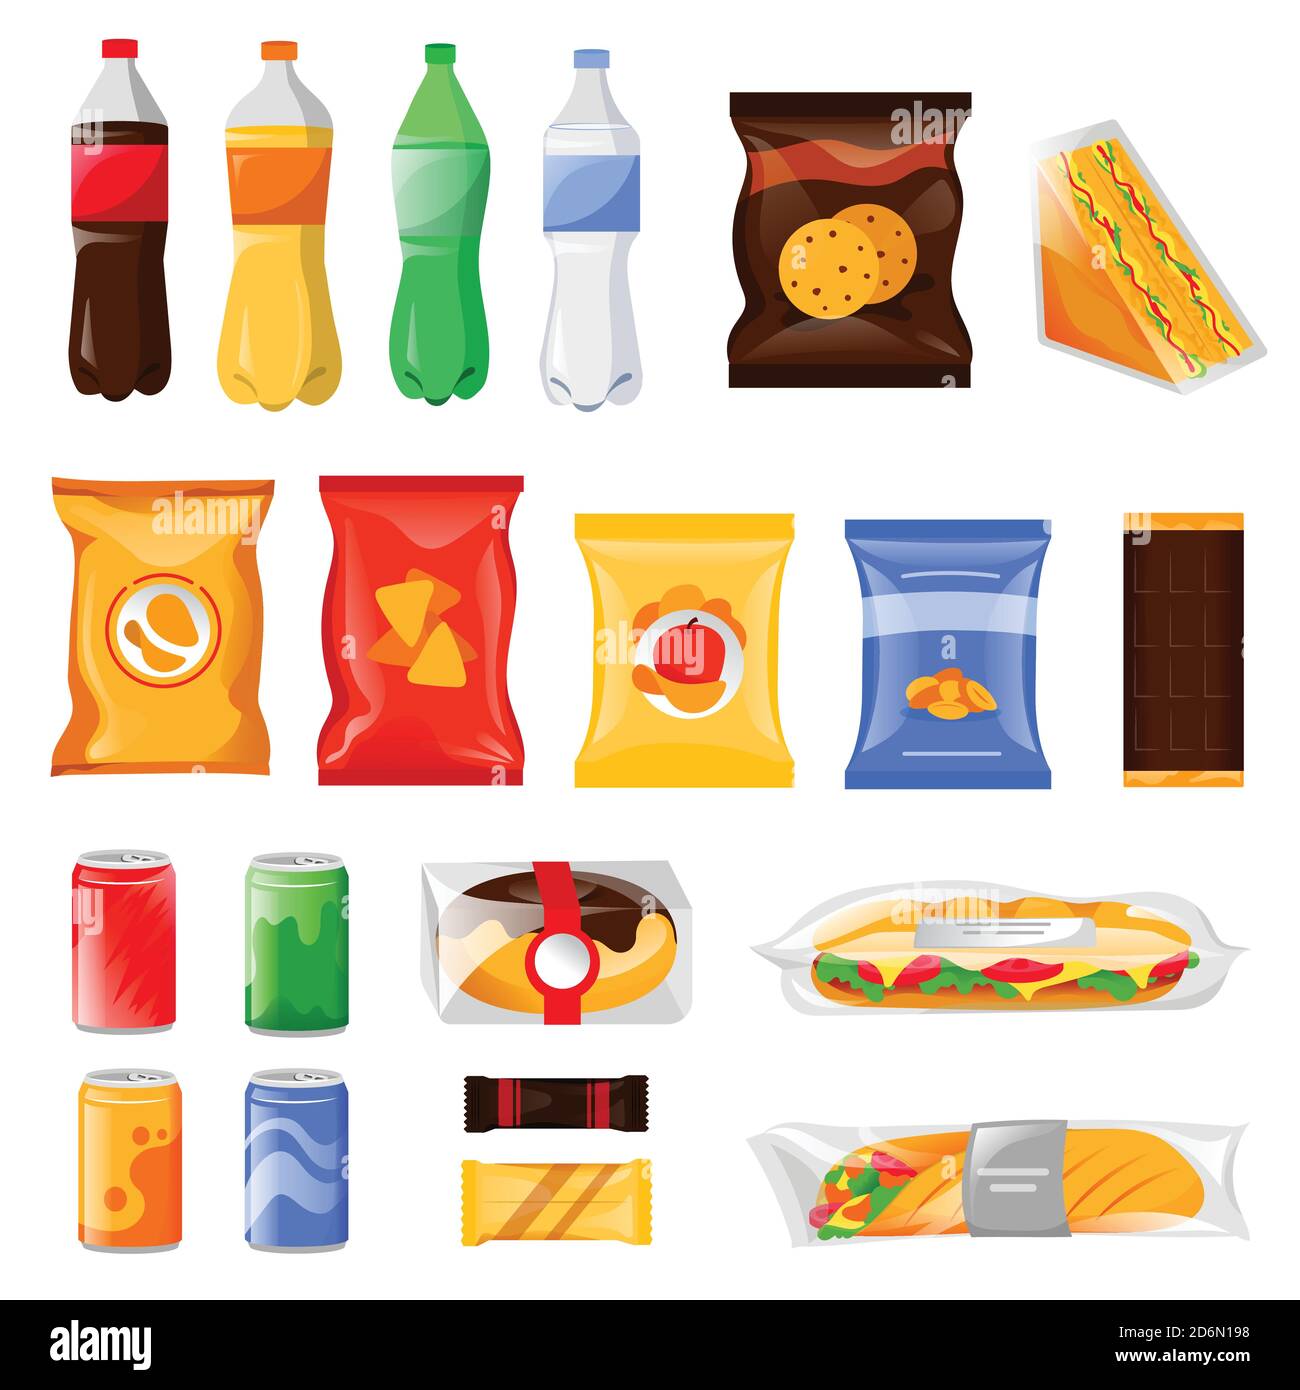 Snack-und Fast-Food-Produkte Set. Cartoon Mahlzeit und Getränke Vektor Illustration, isoliert auf weißem Hintergrund. Getränkeflaschen, Sandwich-Paket und CO Stock Vektor